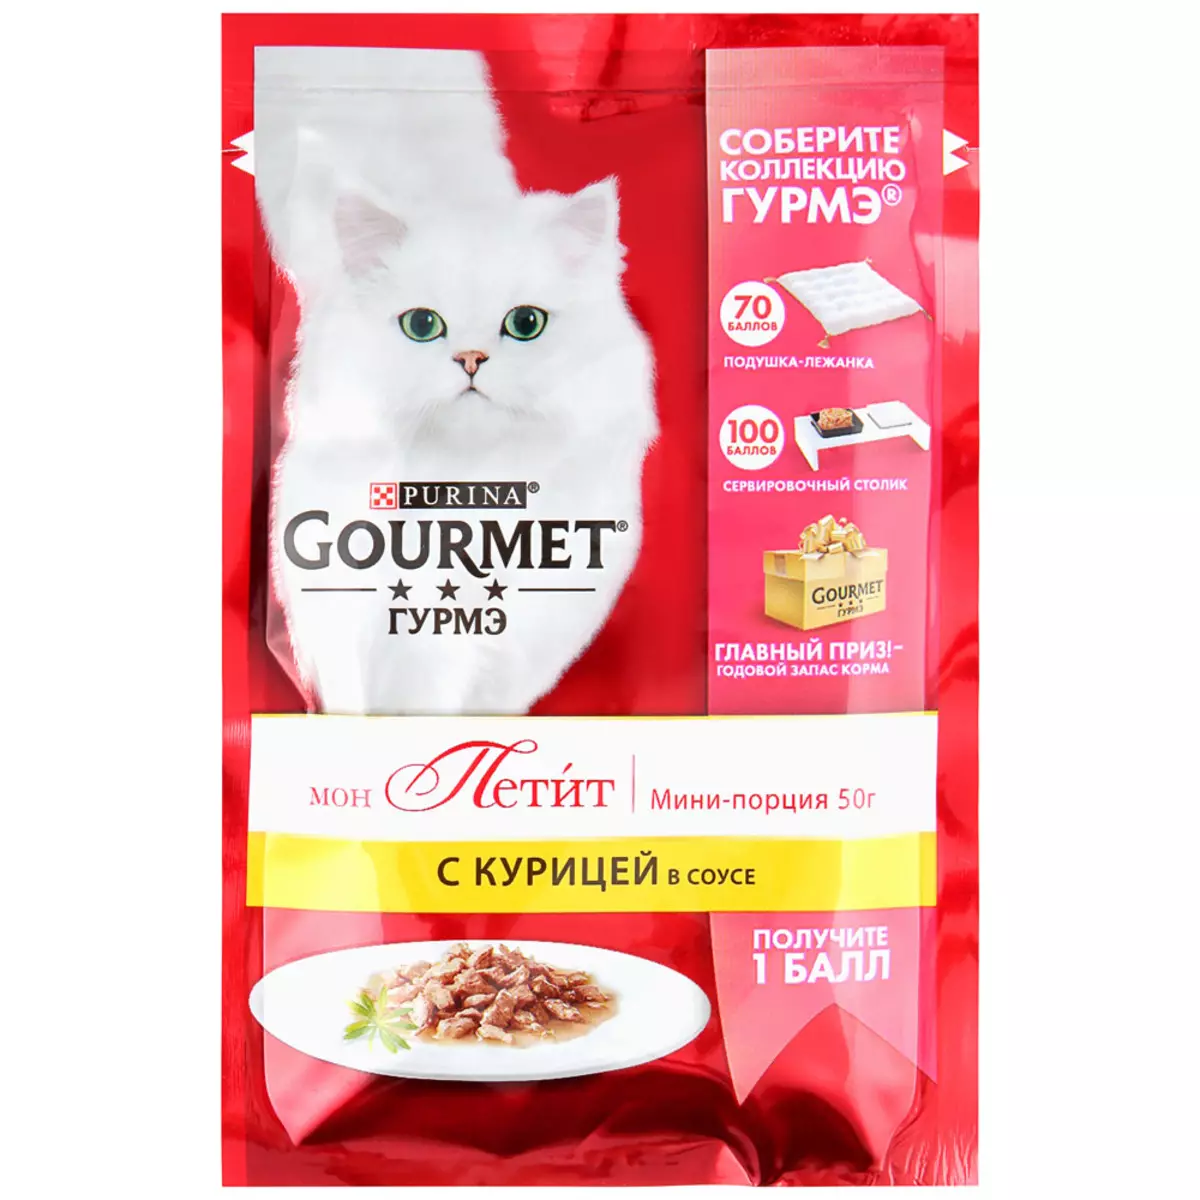 Gourmet: pakan kucing dan kucing purina, pate basah dan makanan kaleng kucing lainnya, komposisi mereka, ulasan 22711_37